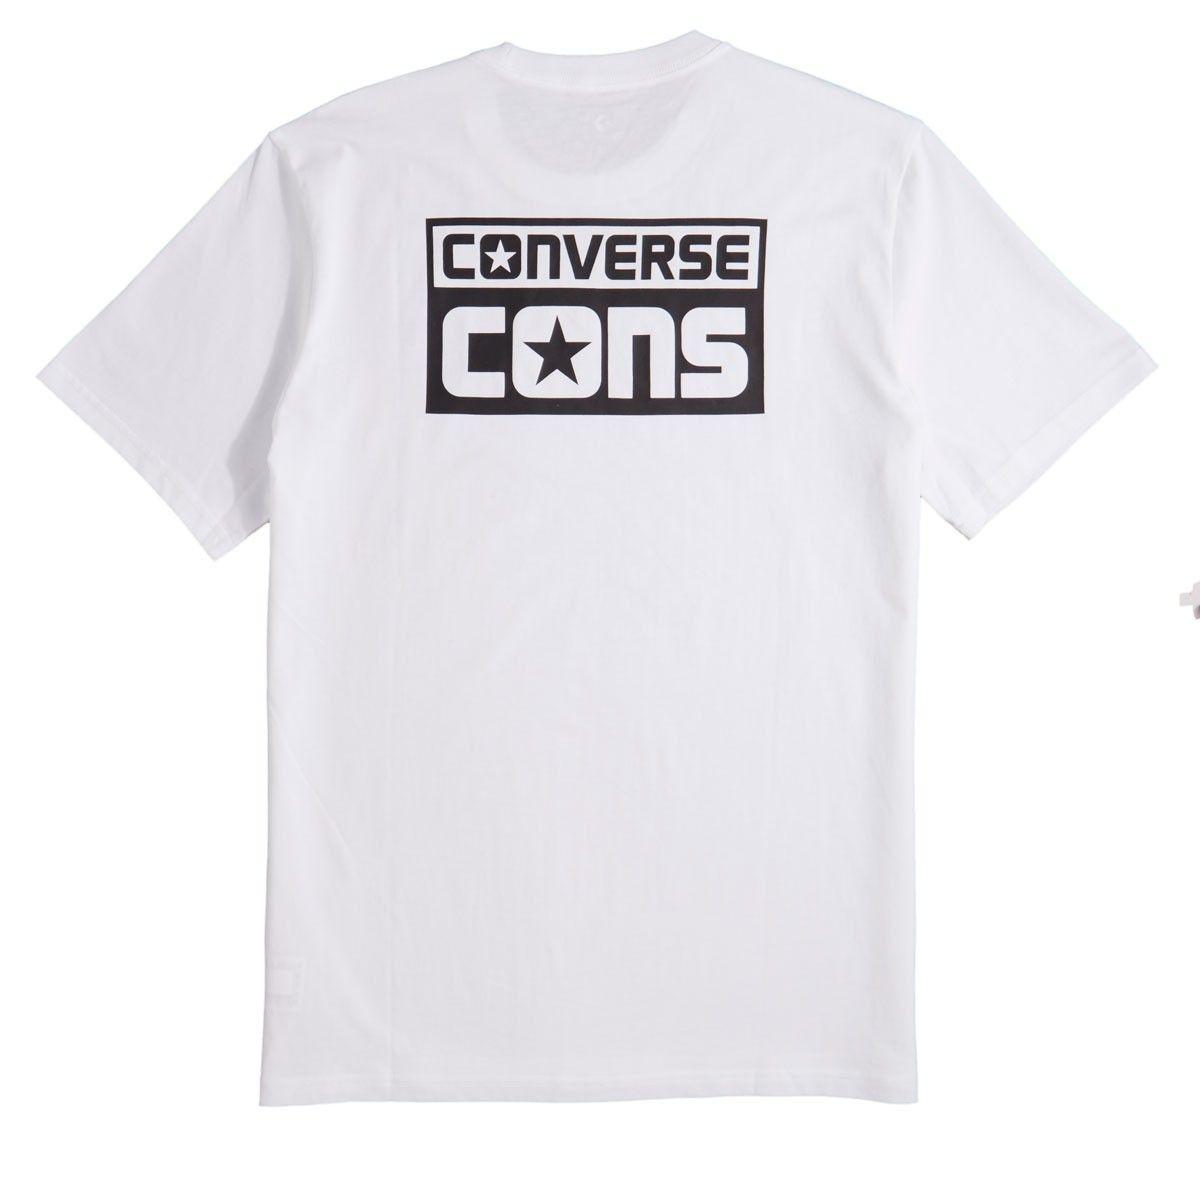 Cons Logo - Converse Cons Logo T-Shirt - White